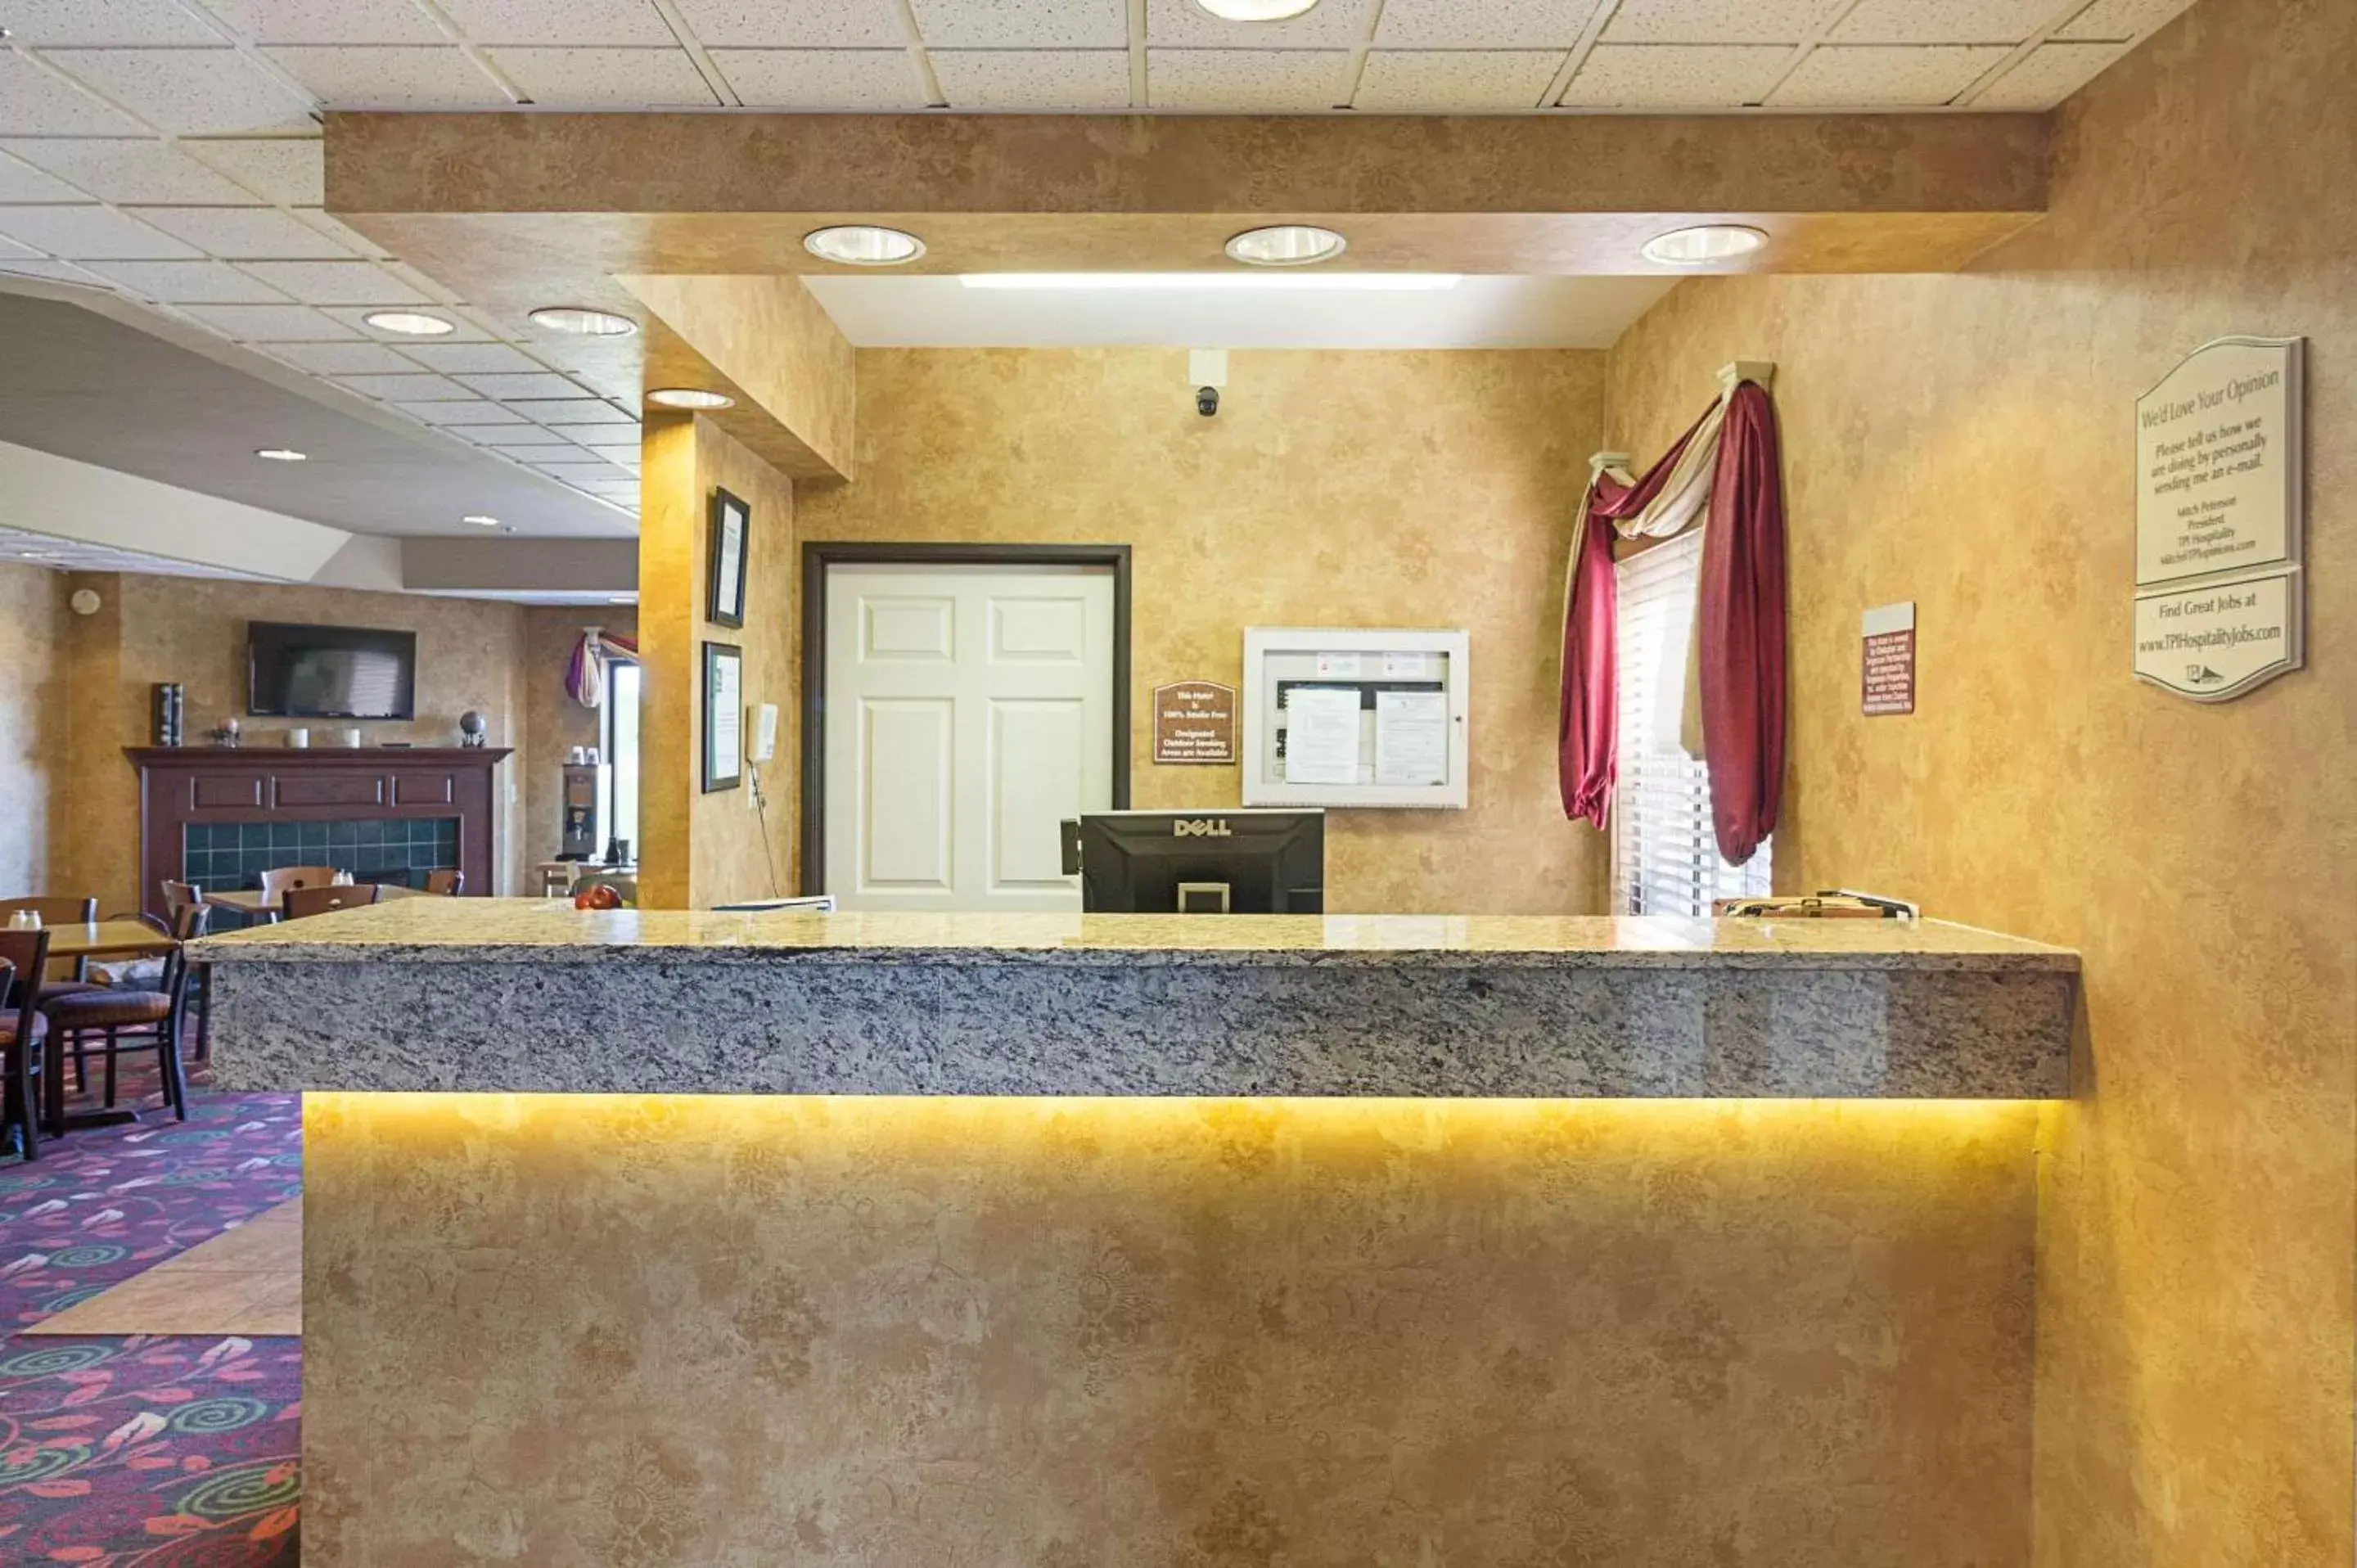 Lobby or reception, Lobby/Reception in Quality Inn Fairmont